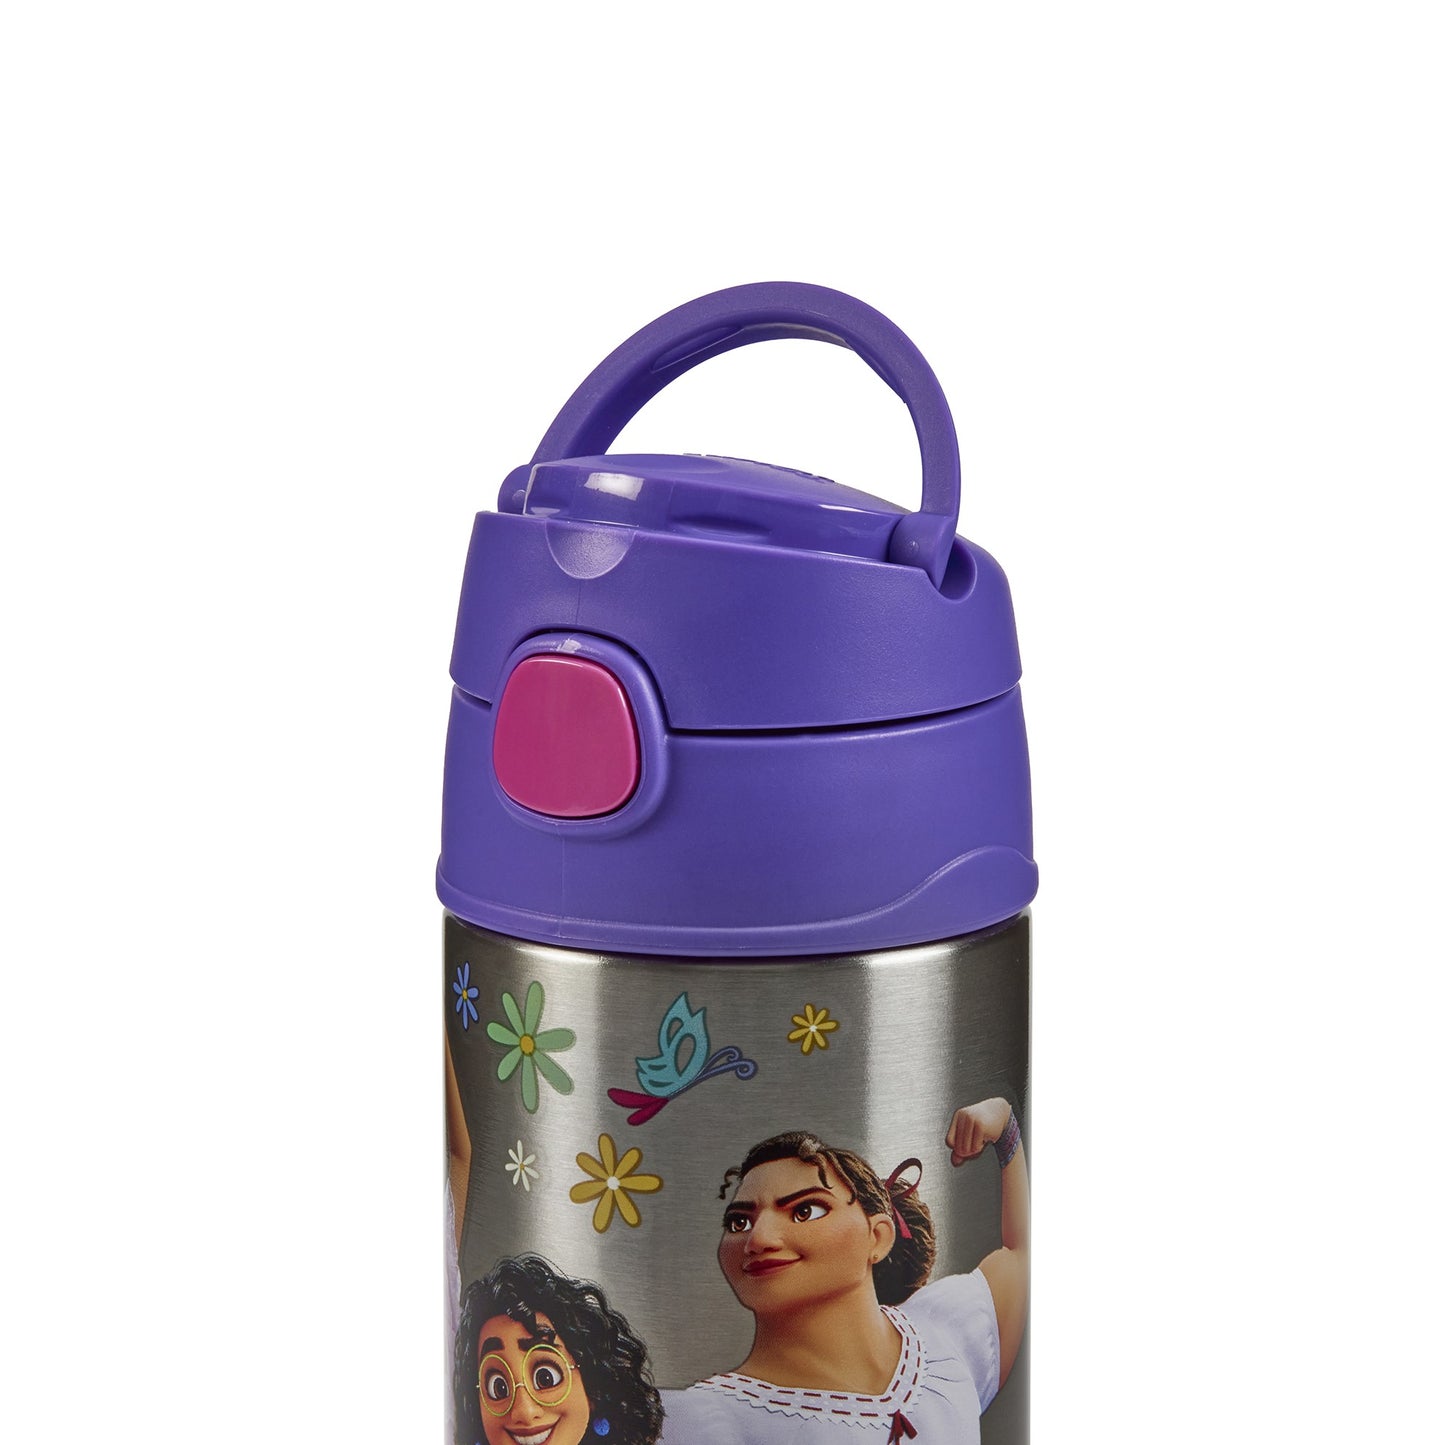 Disney Encanto Funtainer Bottle 335ml